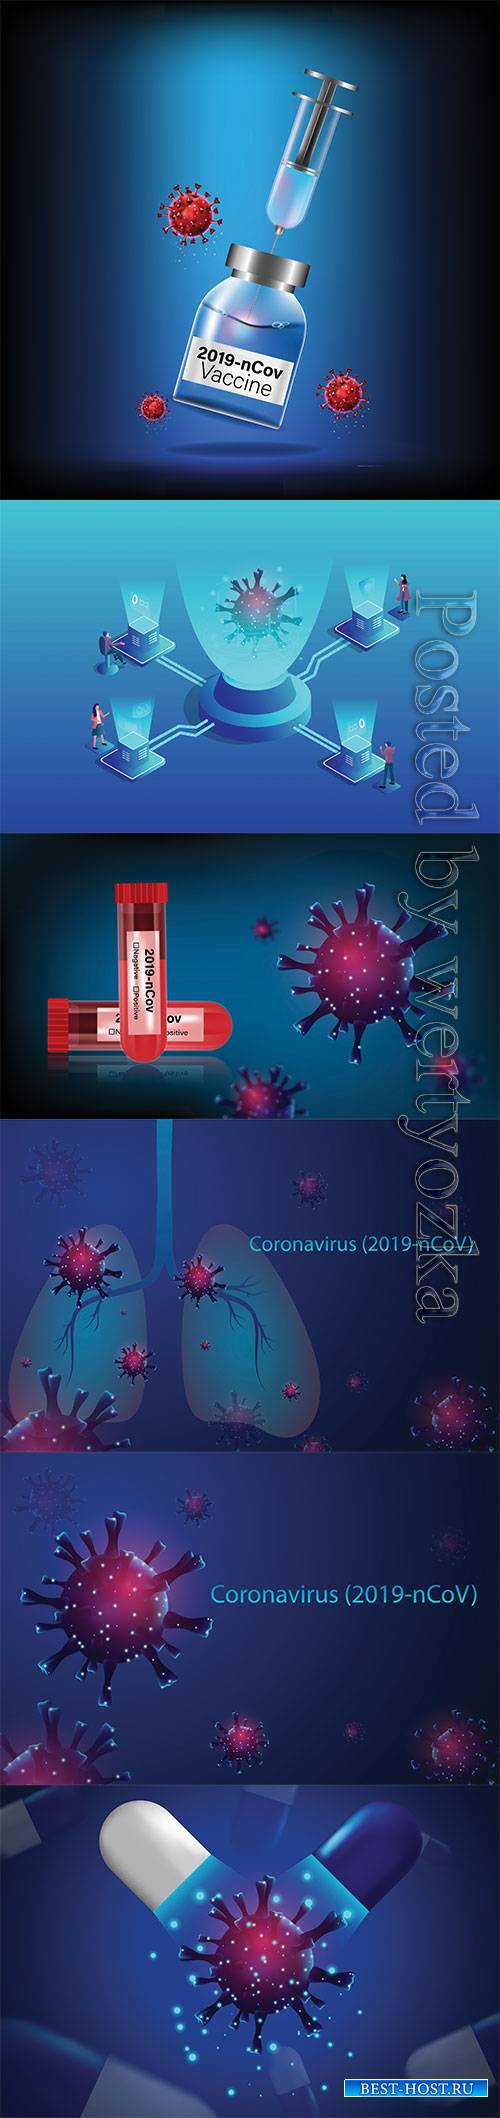 Pandemic virus and antiviral drug coronavirus concept